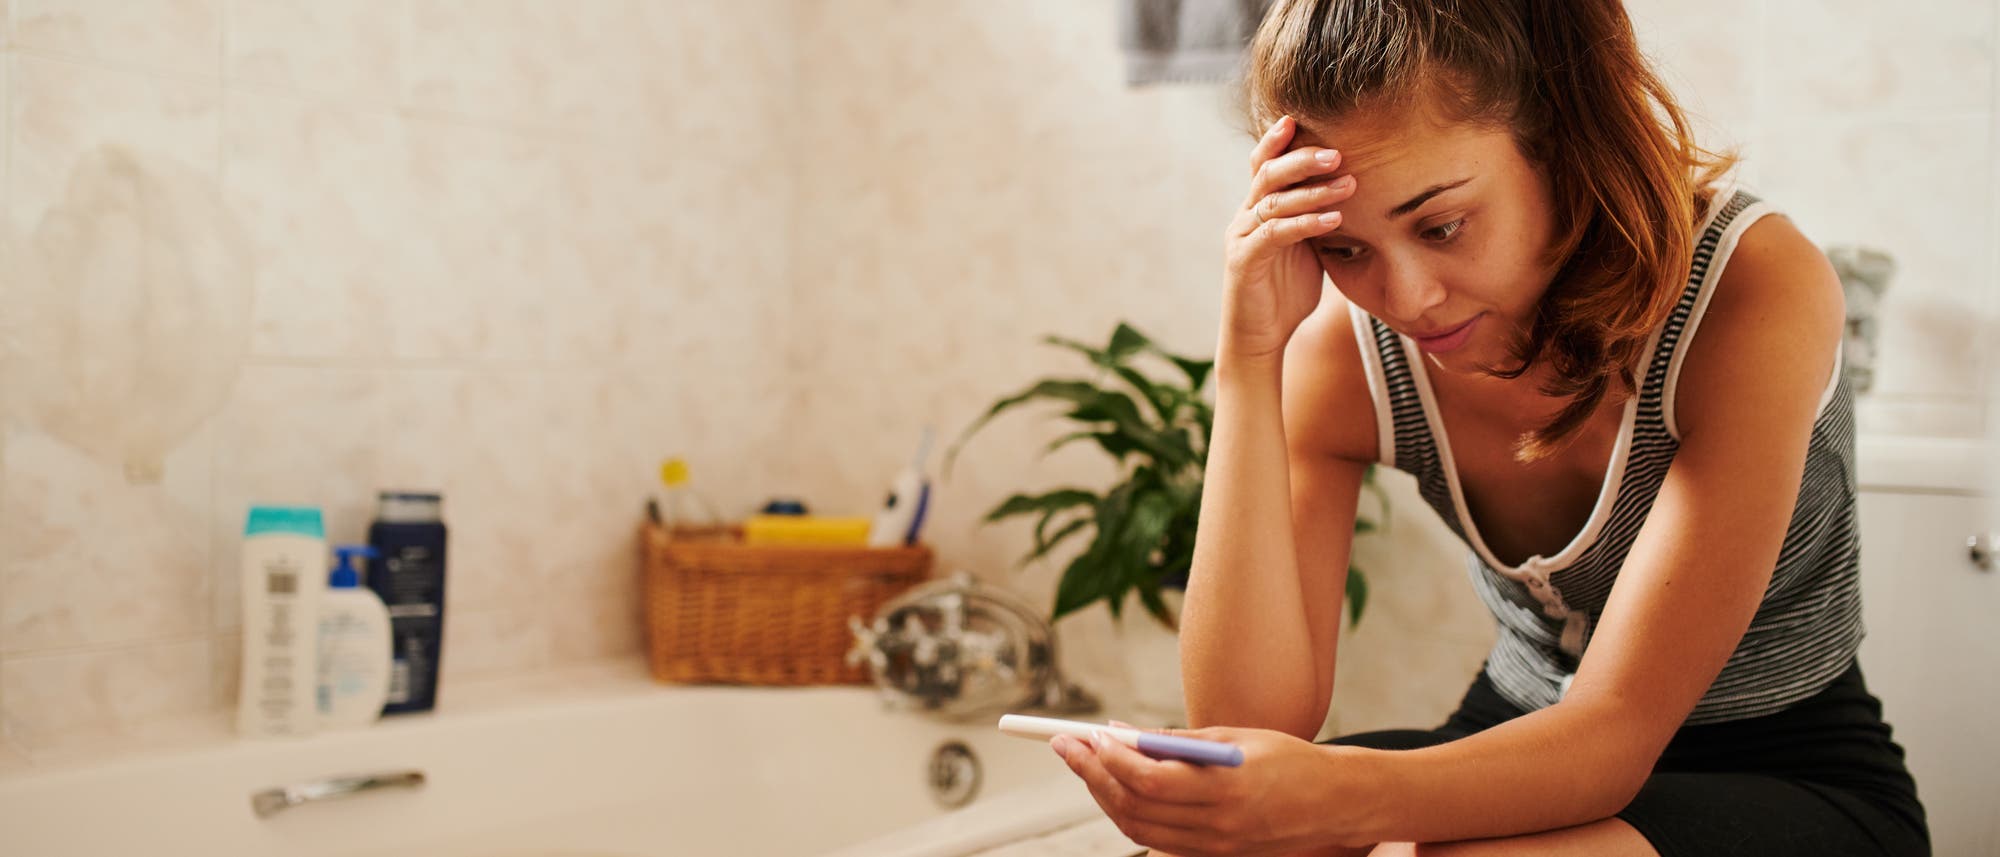 Eine junge Frau sitzt im Bad und schaut ungläubig auf einen Schwangerschaftstest 